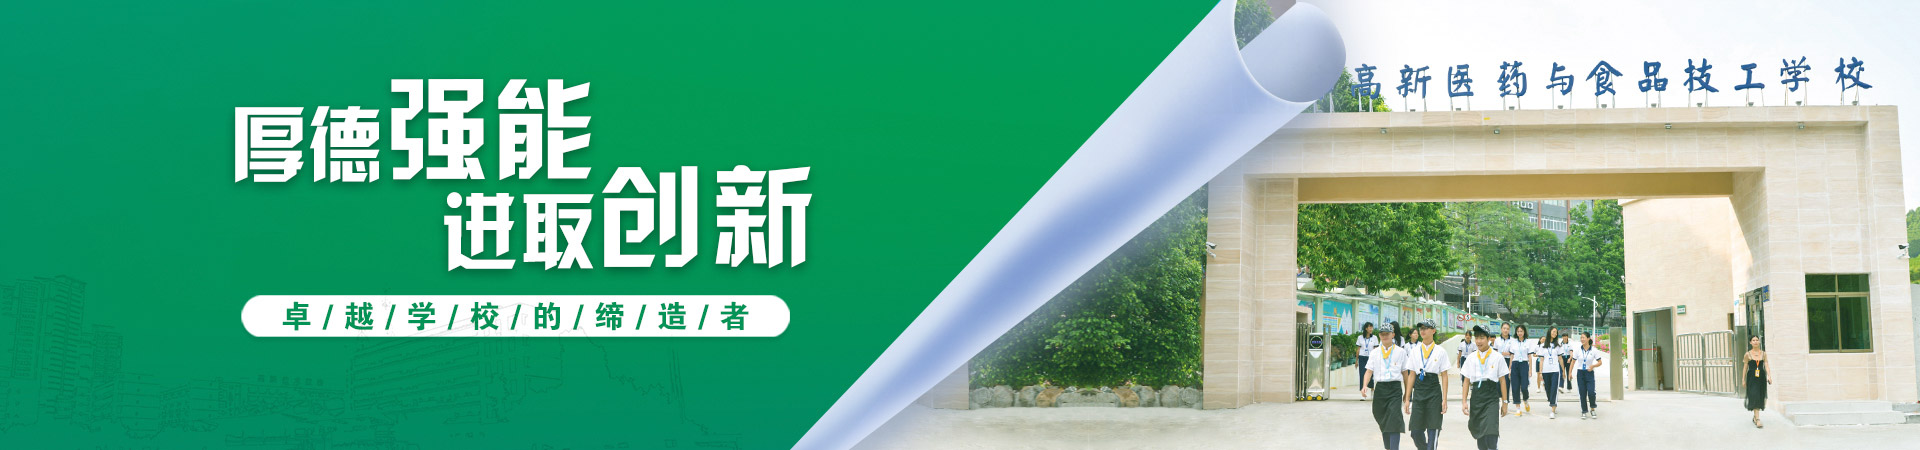 廣州高新教育集團旗下廣州市高新醫藥與食品技工學校